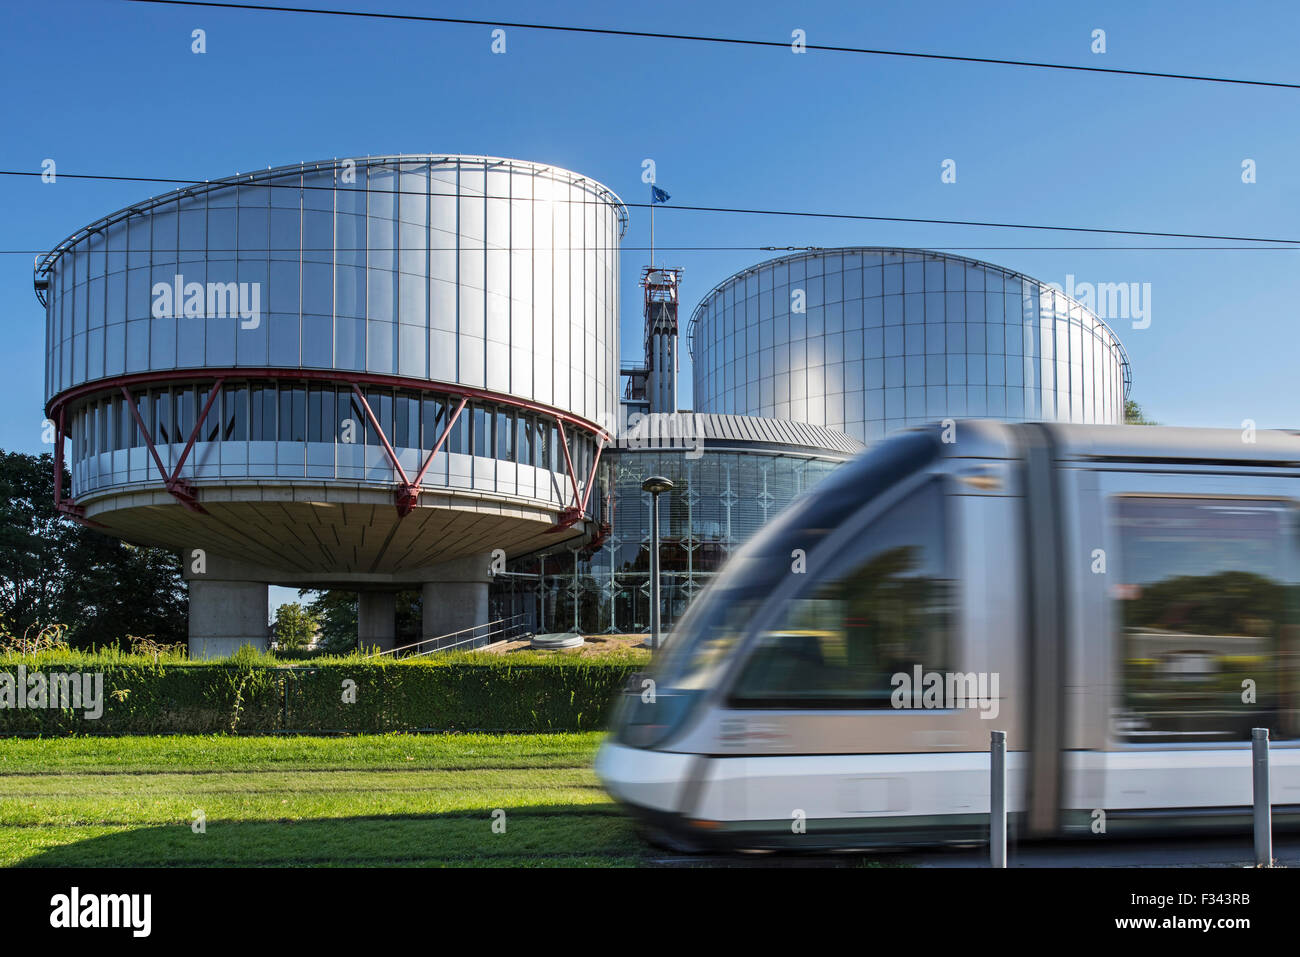 Il tram davanti al palazzo della Corte Europea dei Diritti dell'uomo / ECtHR a Strasburgo, Francia Foto Stock